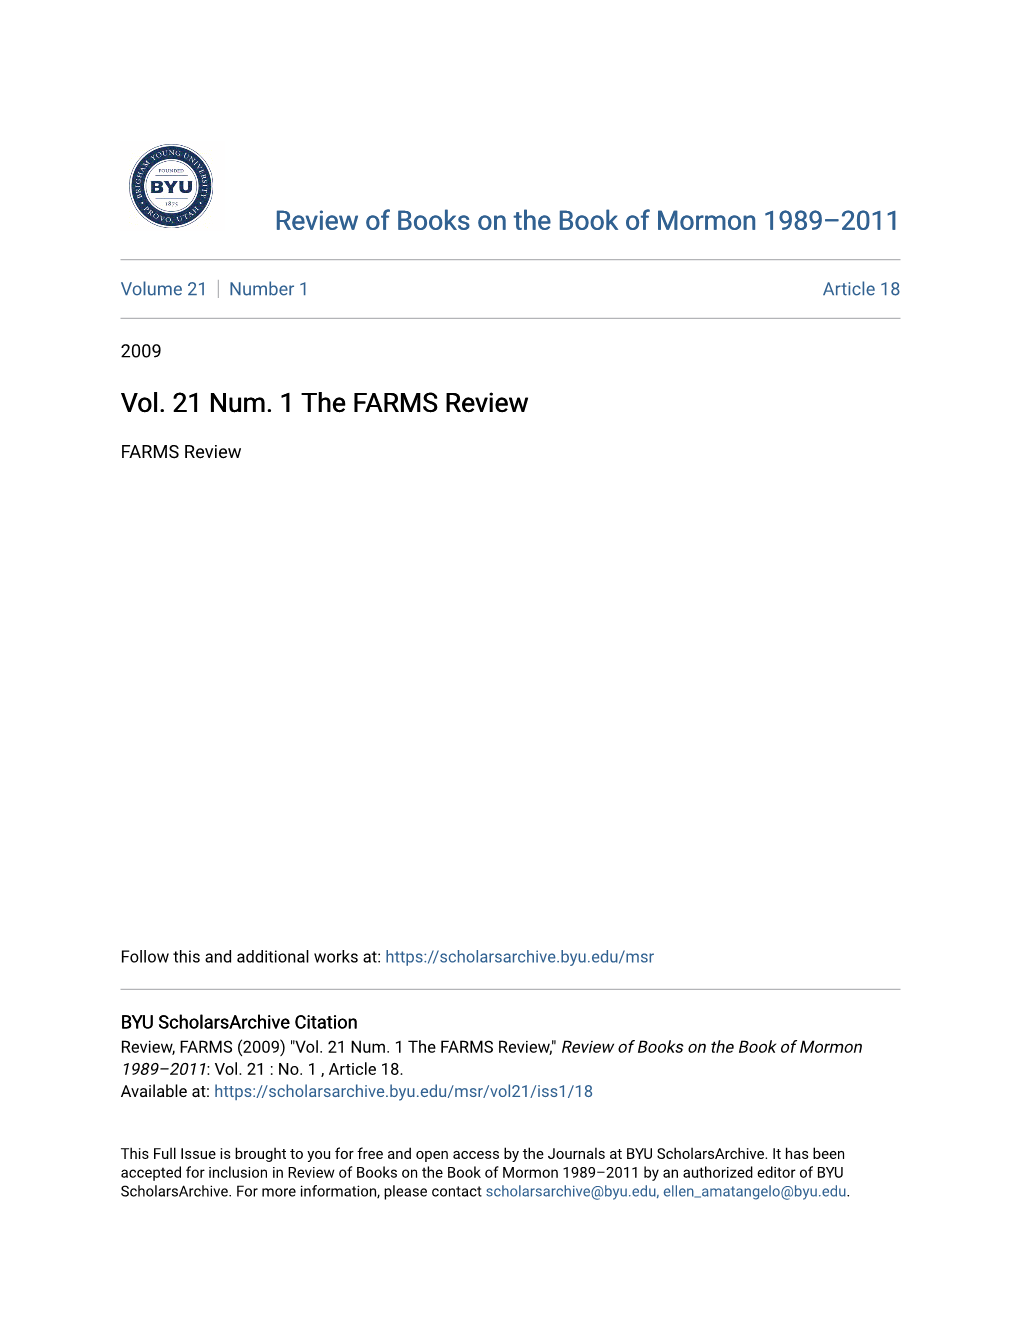 Vol. 21 Num. 1 the FARMS Review